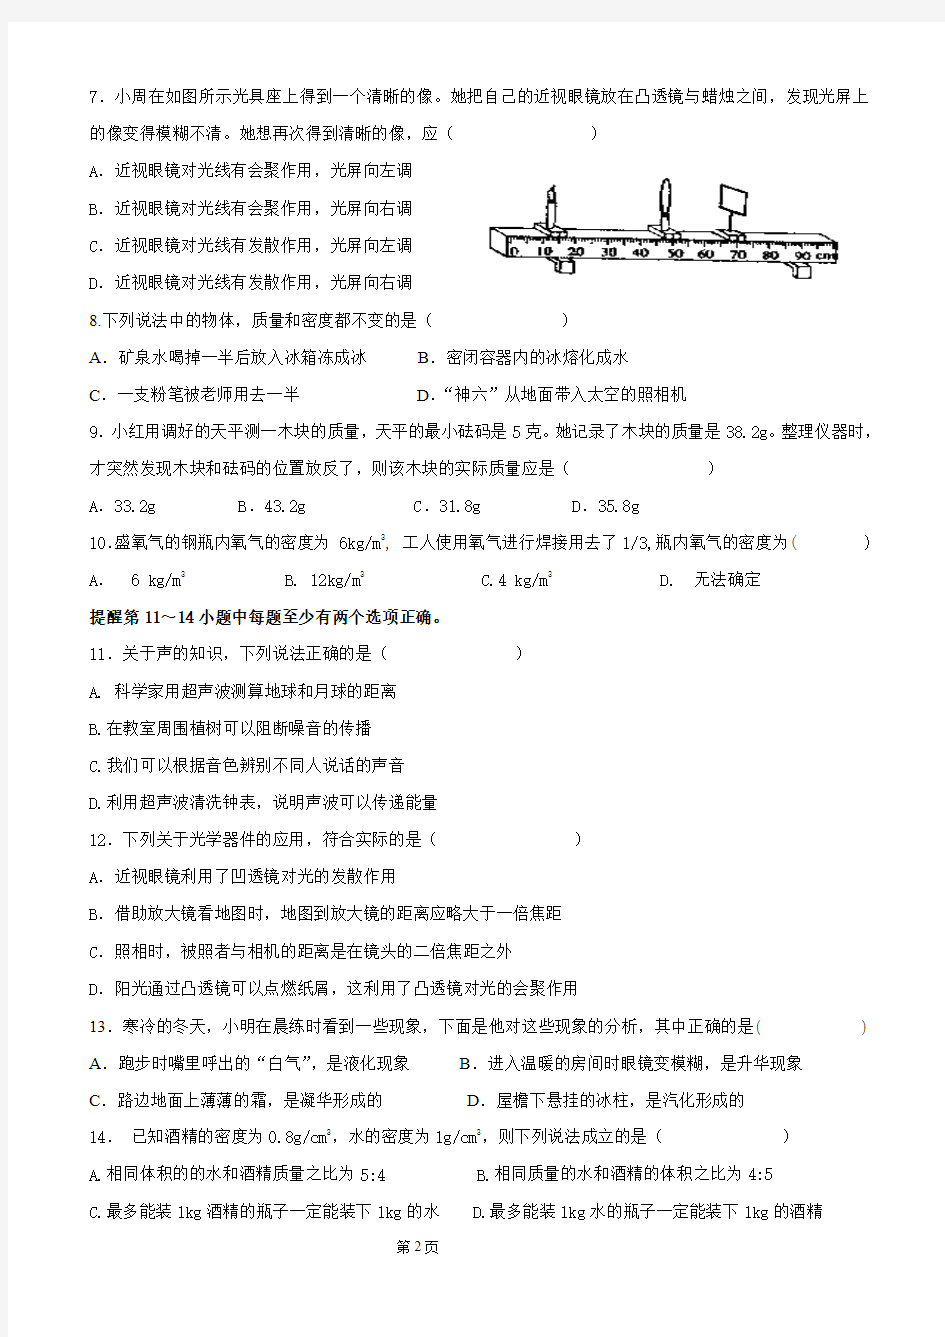 辽宁省实验学校八年级阶段测试(一)——物理试卷(打印版)